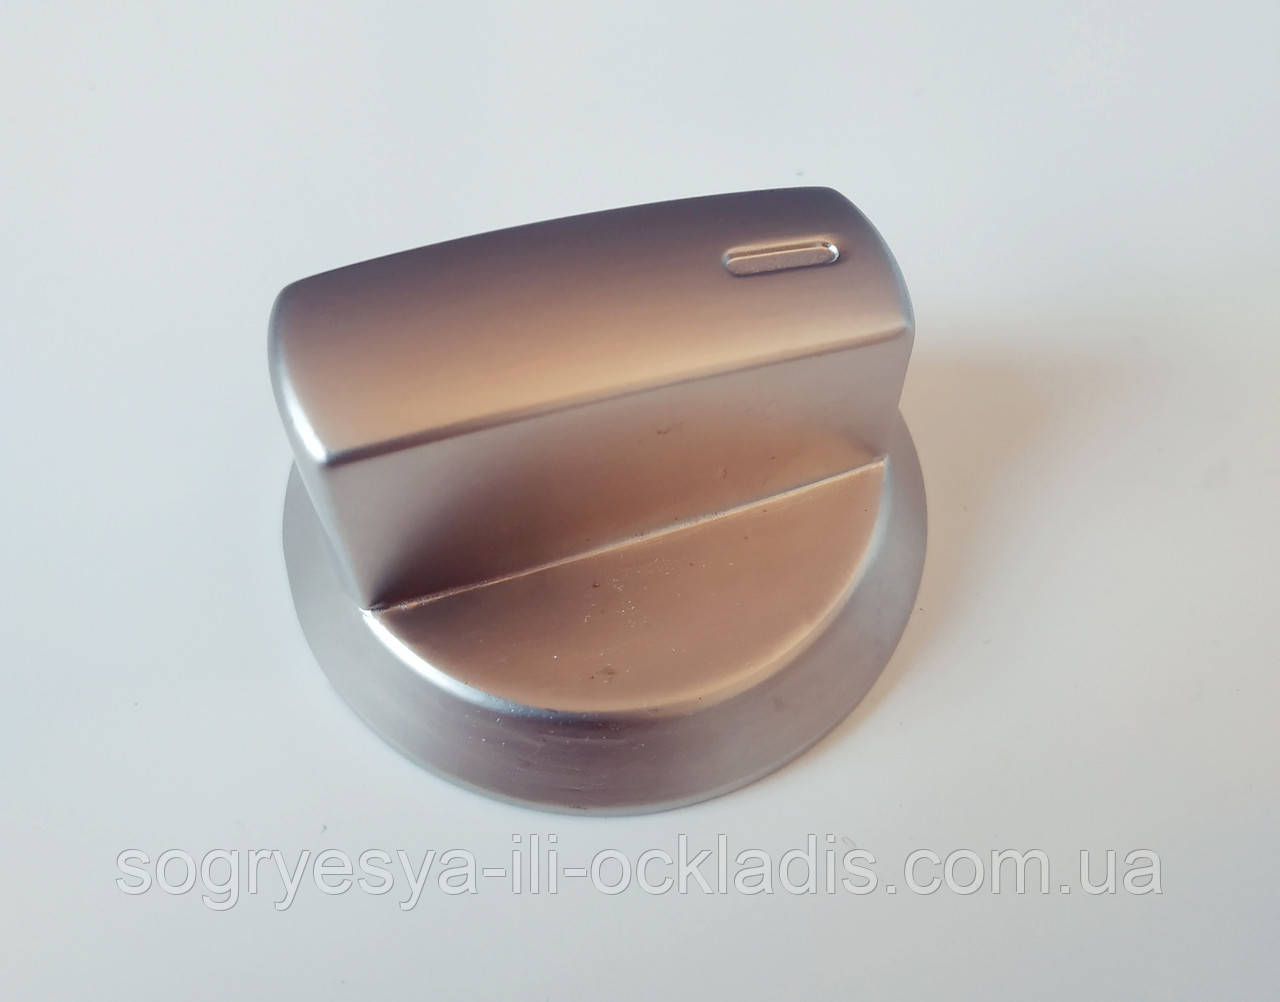 Ручка для плити універсальна діаметр 6 мм (метал, срібло) код товару: 7101